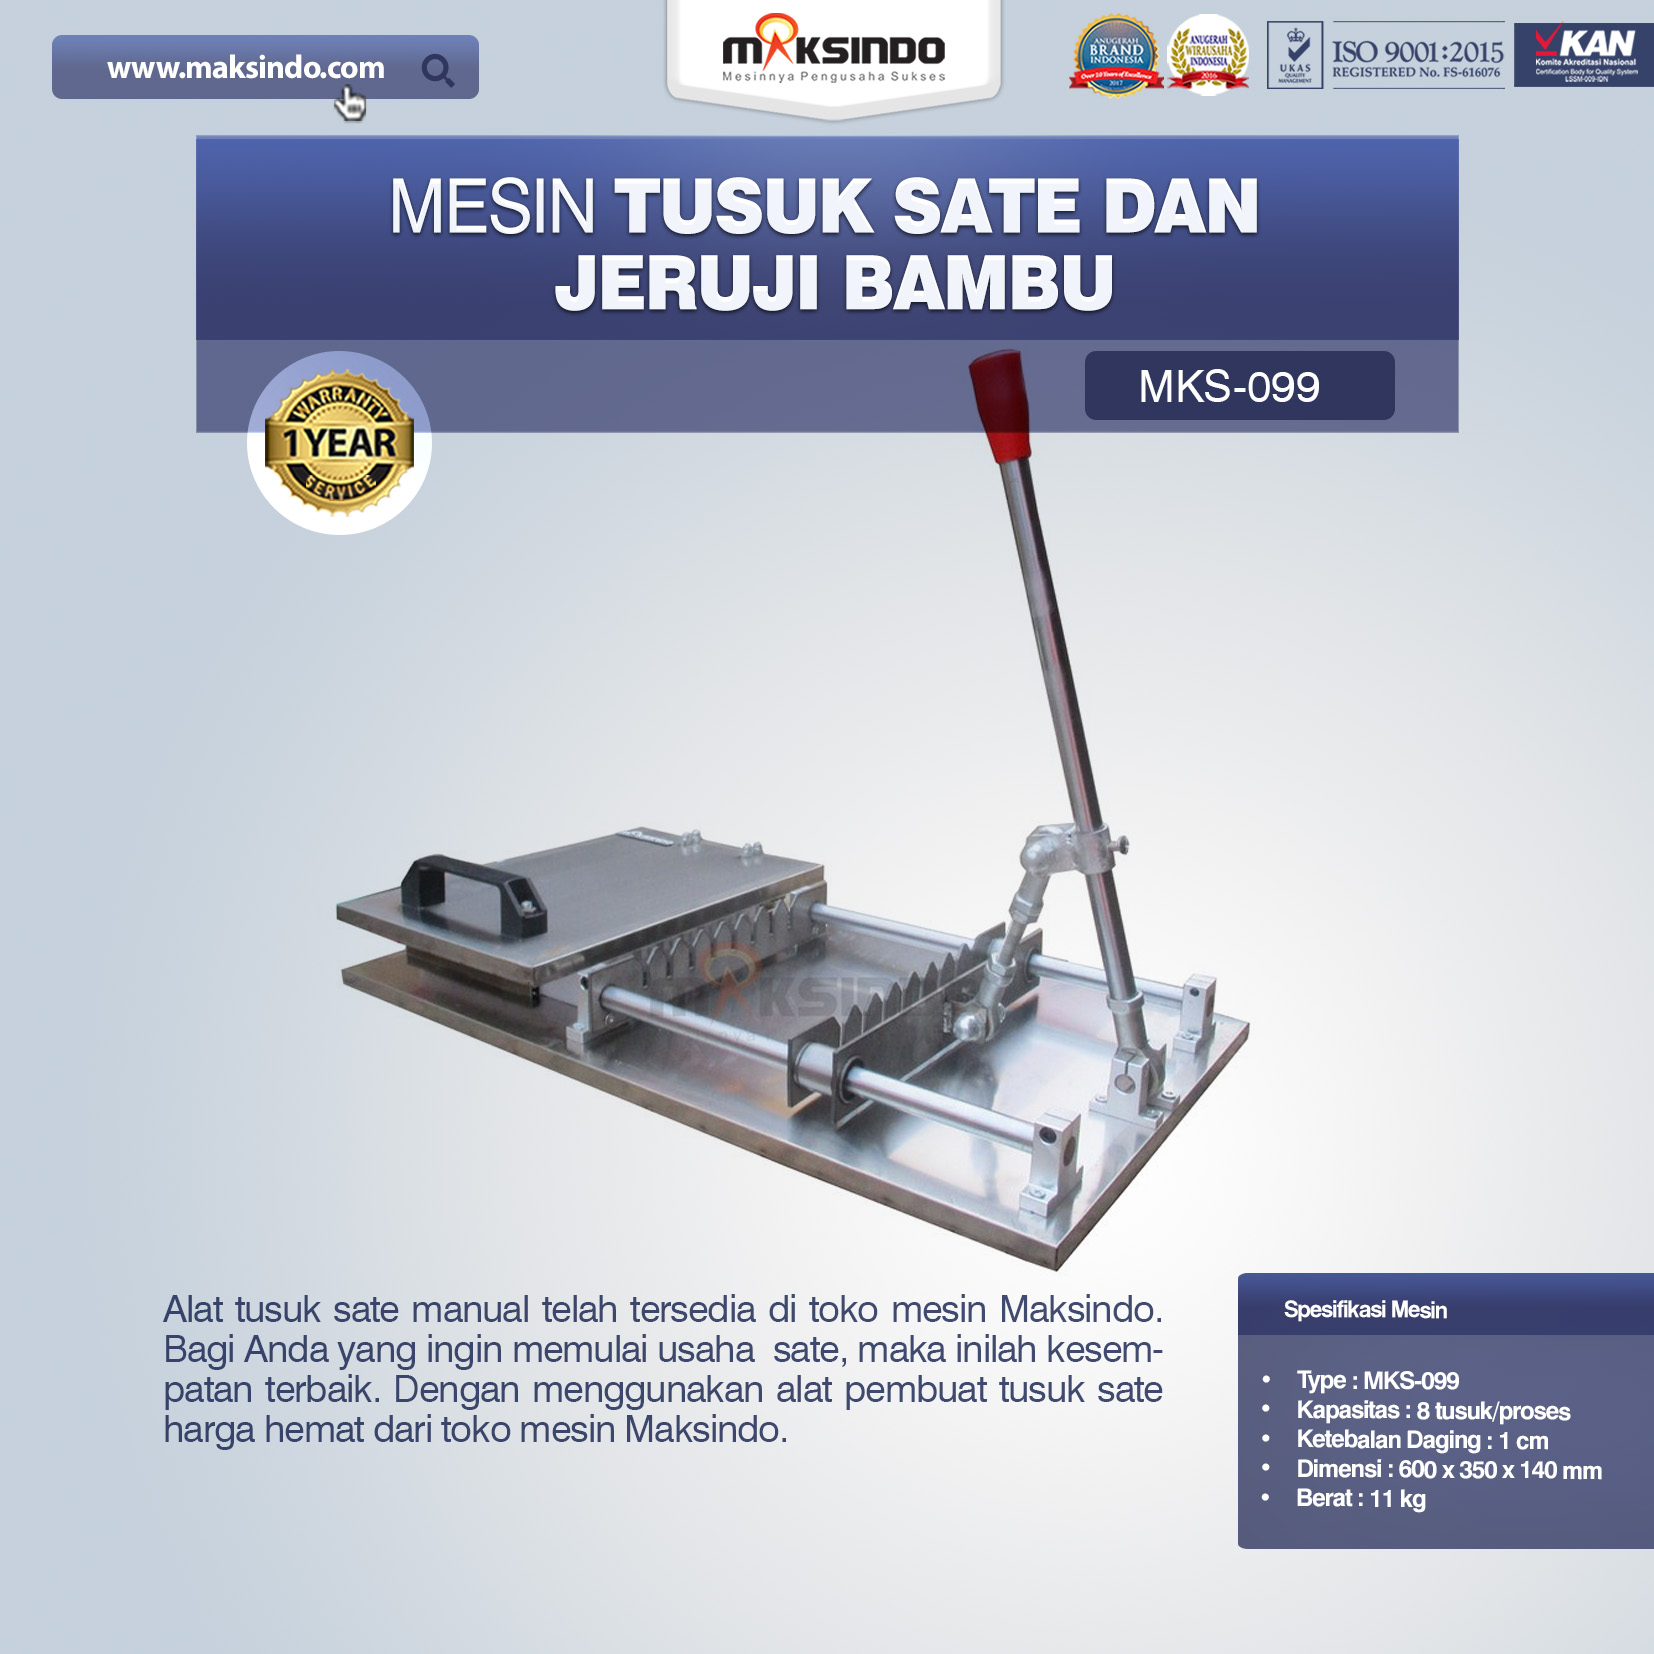 Jual Alat Tusuk Sate Manual MKS-099 di Tangerang